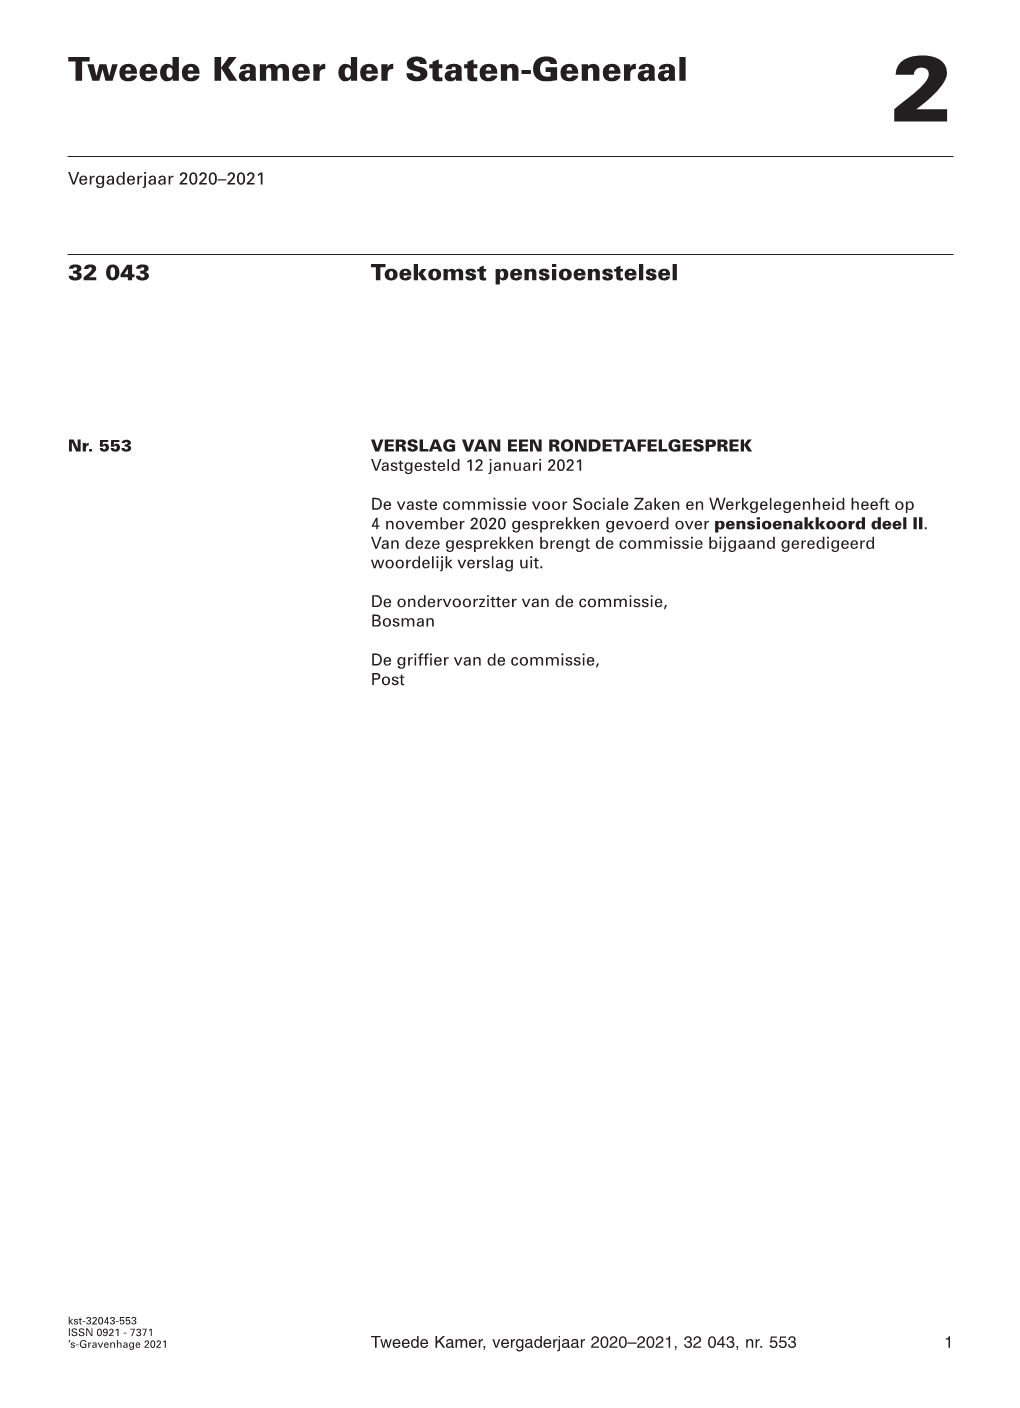 Verslag Van Een Rondetafelgesprek, Gehouden Op 4 November 2020, Over Pensioenakkoord Deel II